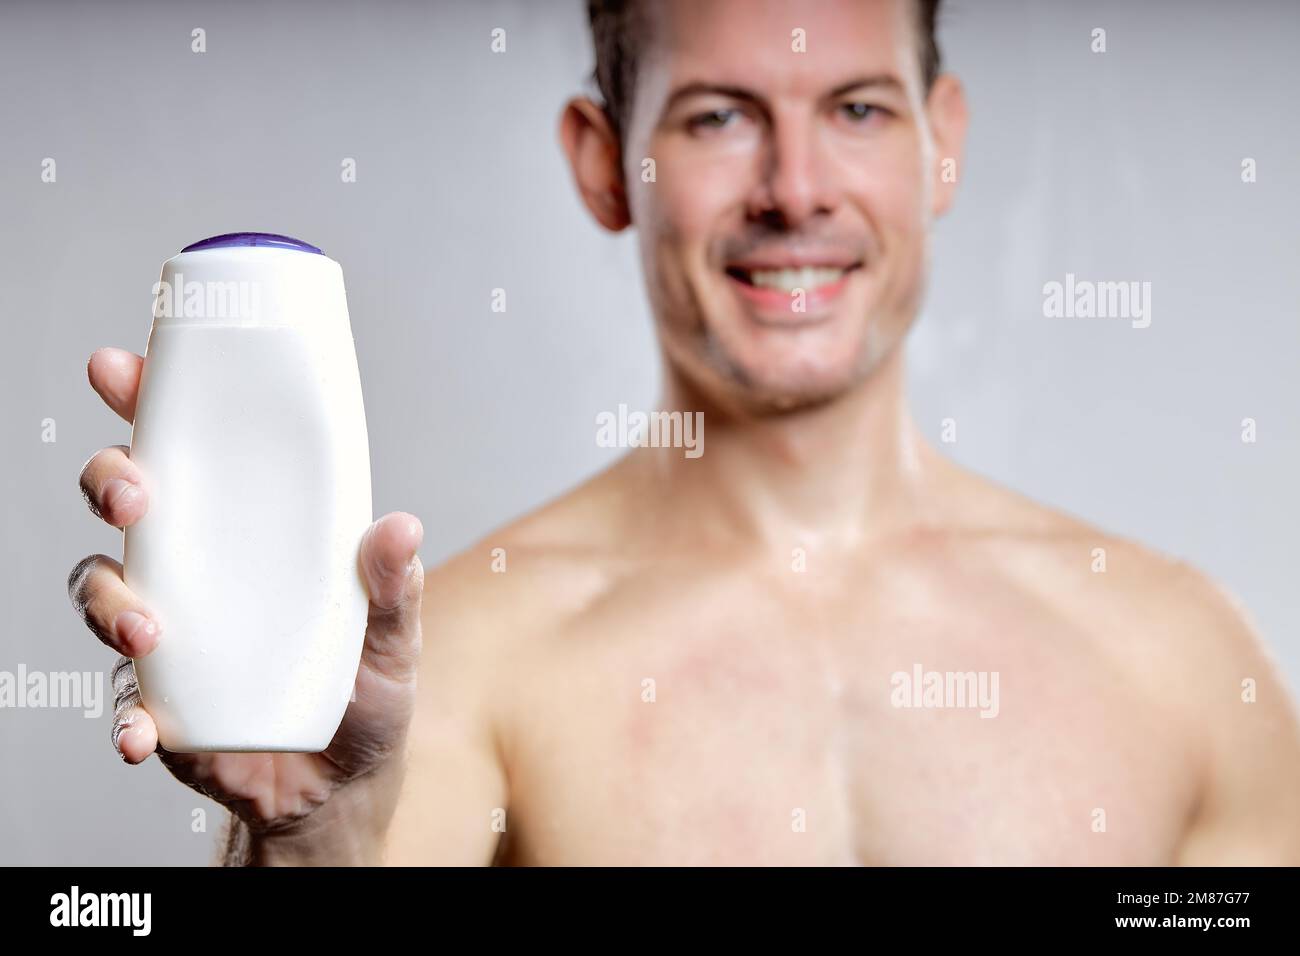 Nahaufnahme eines aufgeregten Mannes, der eine Flasche Gel oder Shampoo zeigt, zur Werbung, isoliert auf grauem Studiohintergrund. Junger Mann mit weißem Notenblatt Stockfoto